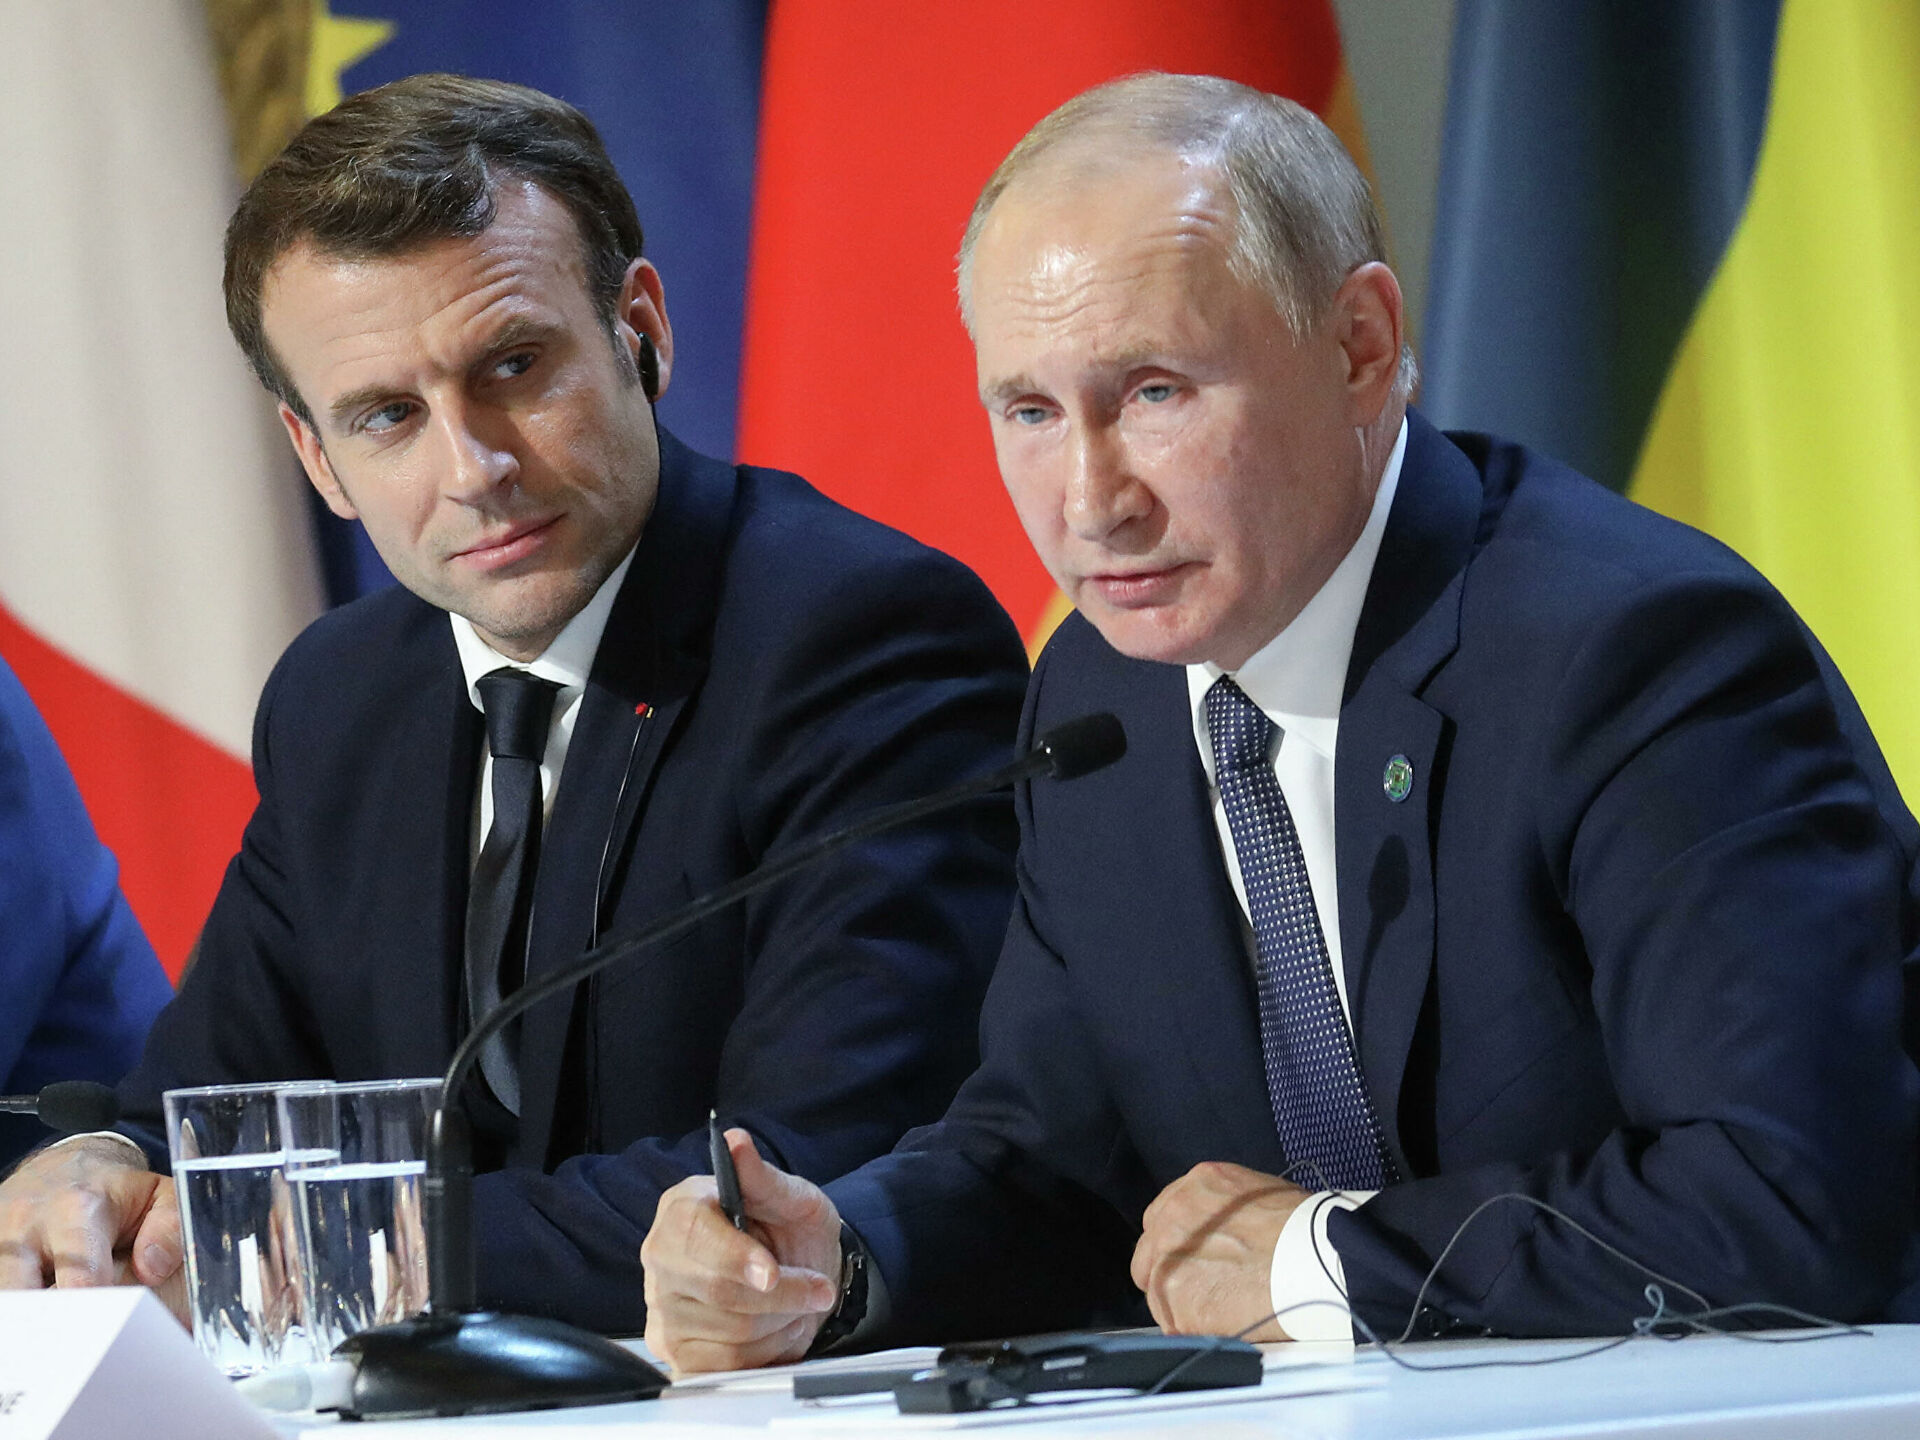 Makron-Putin PARADOKSU: Fransa rəhbəri danışacağıq dedi, Putinin isə bundan xəbəri yoxdur